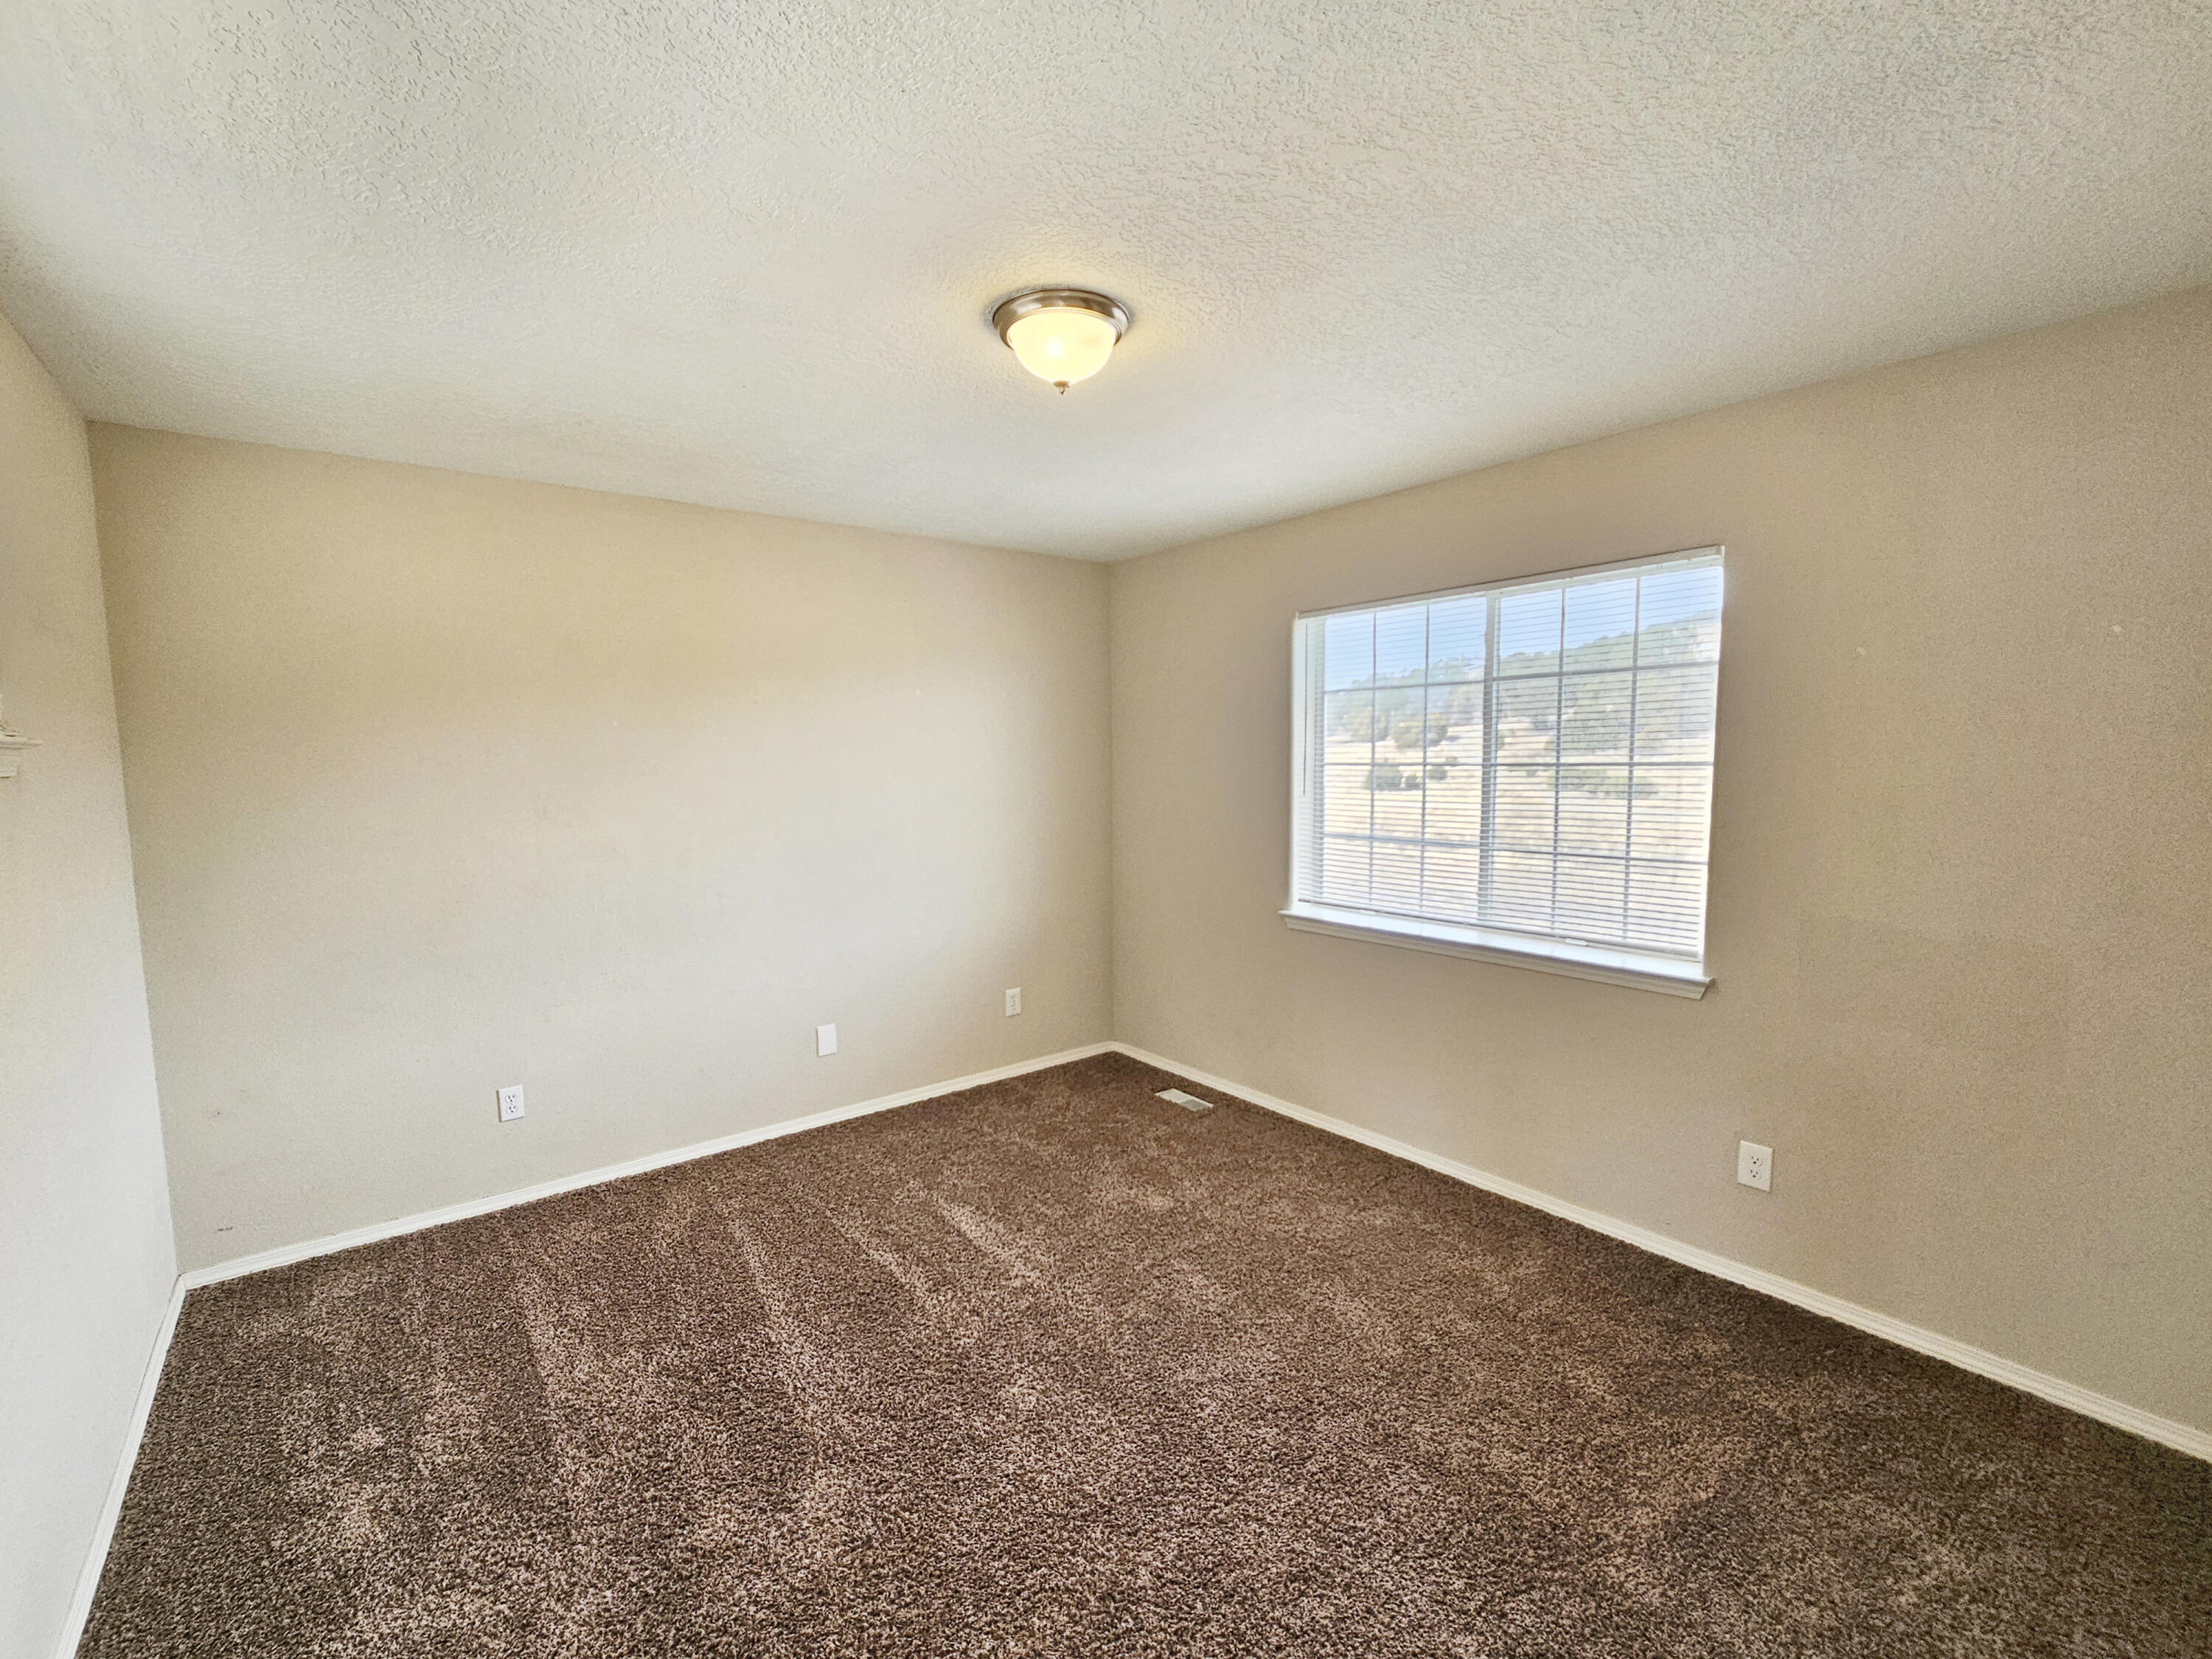 73 Dinkle Road, Edgewood, New Mexico 87015, 3 Bedrooms Bedrooms, ,3 BathroomsBathrooms,Residential,For Sale,73 Dinkle Road,1059458